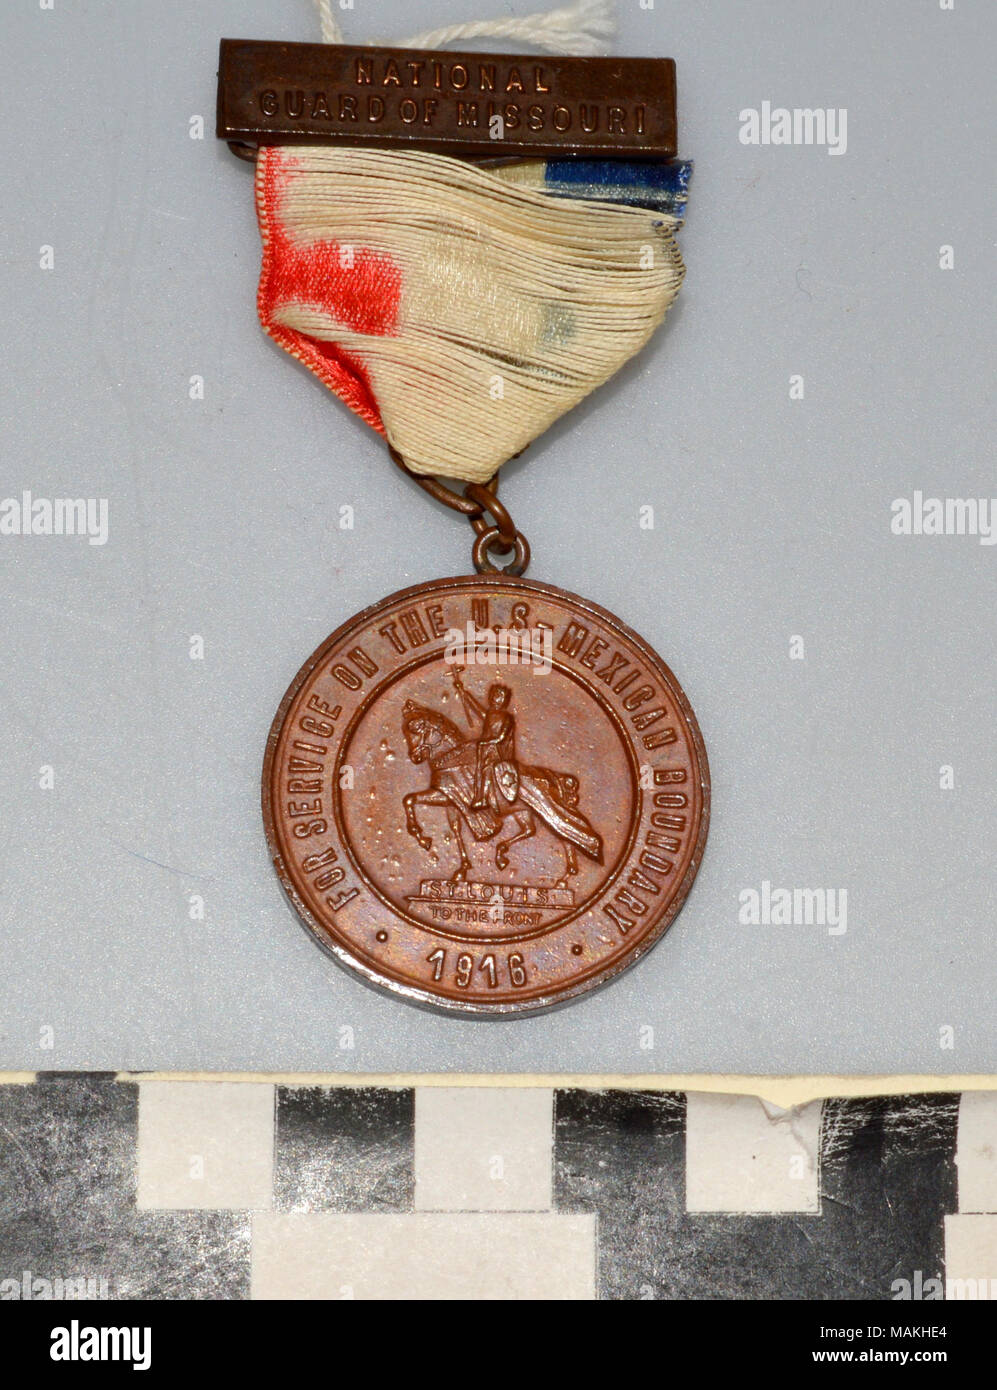 La Guardia Nacional de Missouri medalla entregados al Capitán Frank M. Rumbold para servicio en la frontera México-Estados Unidos. El premio fue entregado por la ciudad de San Luis, a los soldados que participan en el conflicto. Título: Medalla al Capitán Frank M. Rumbold para servicio en la frontera entre Estados Unidos y México . 1916. Foto de stock